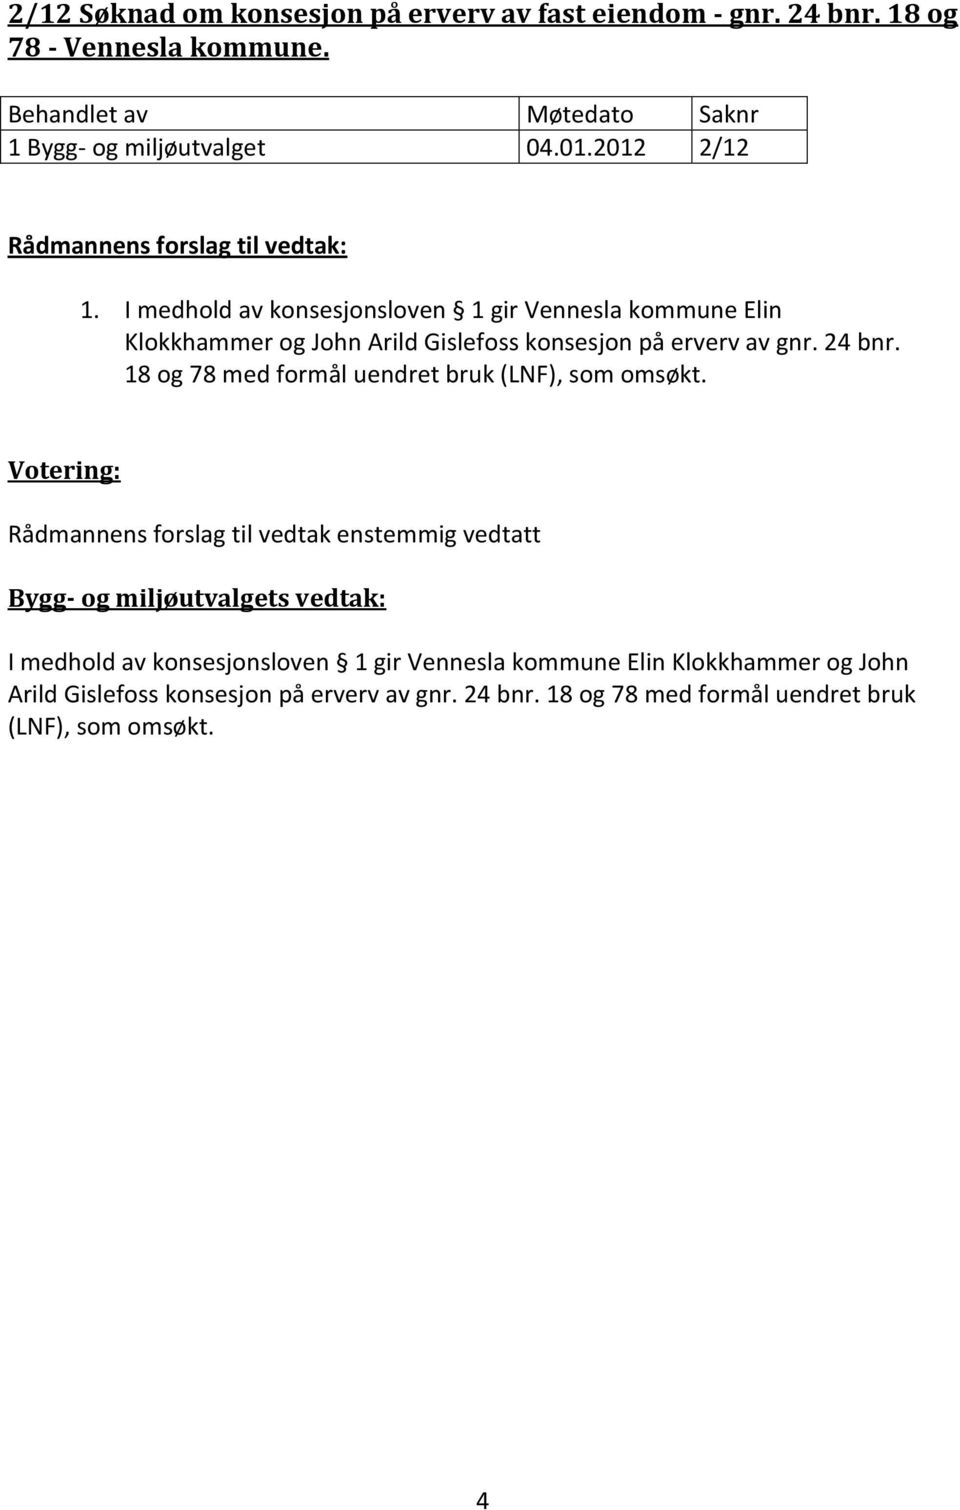 I medhold av konsesjonsloven 1 gir Vennesla kommune Elin Klokkhammer og John Arild Gislefoss konsesjon på erverv av gnr.